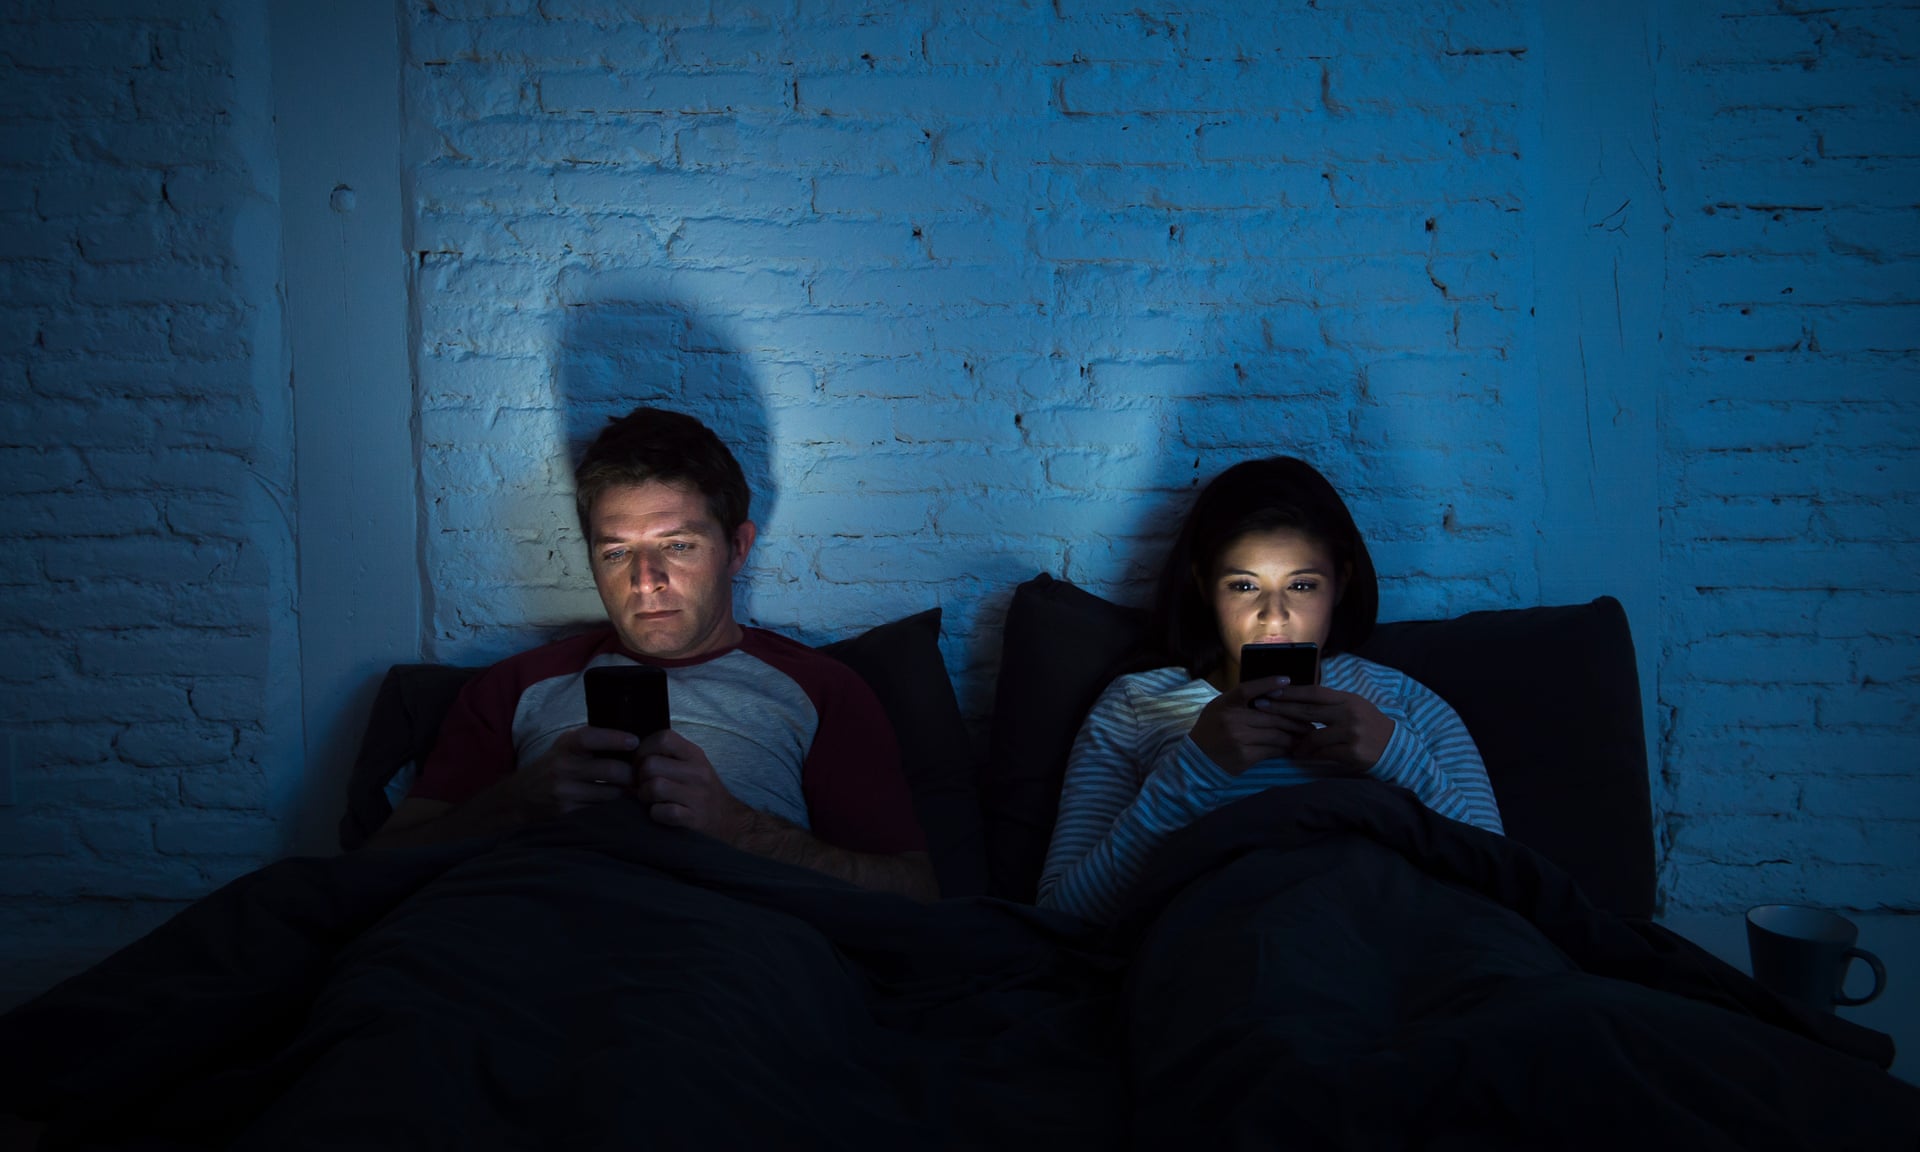 Nghiên cứu mới: ánh sáng vàng từ smartphone và chế độ tối không giúp chúng ta dễ ngủ hơn